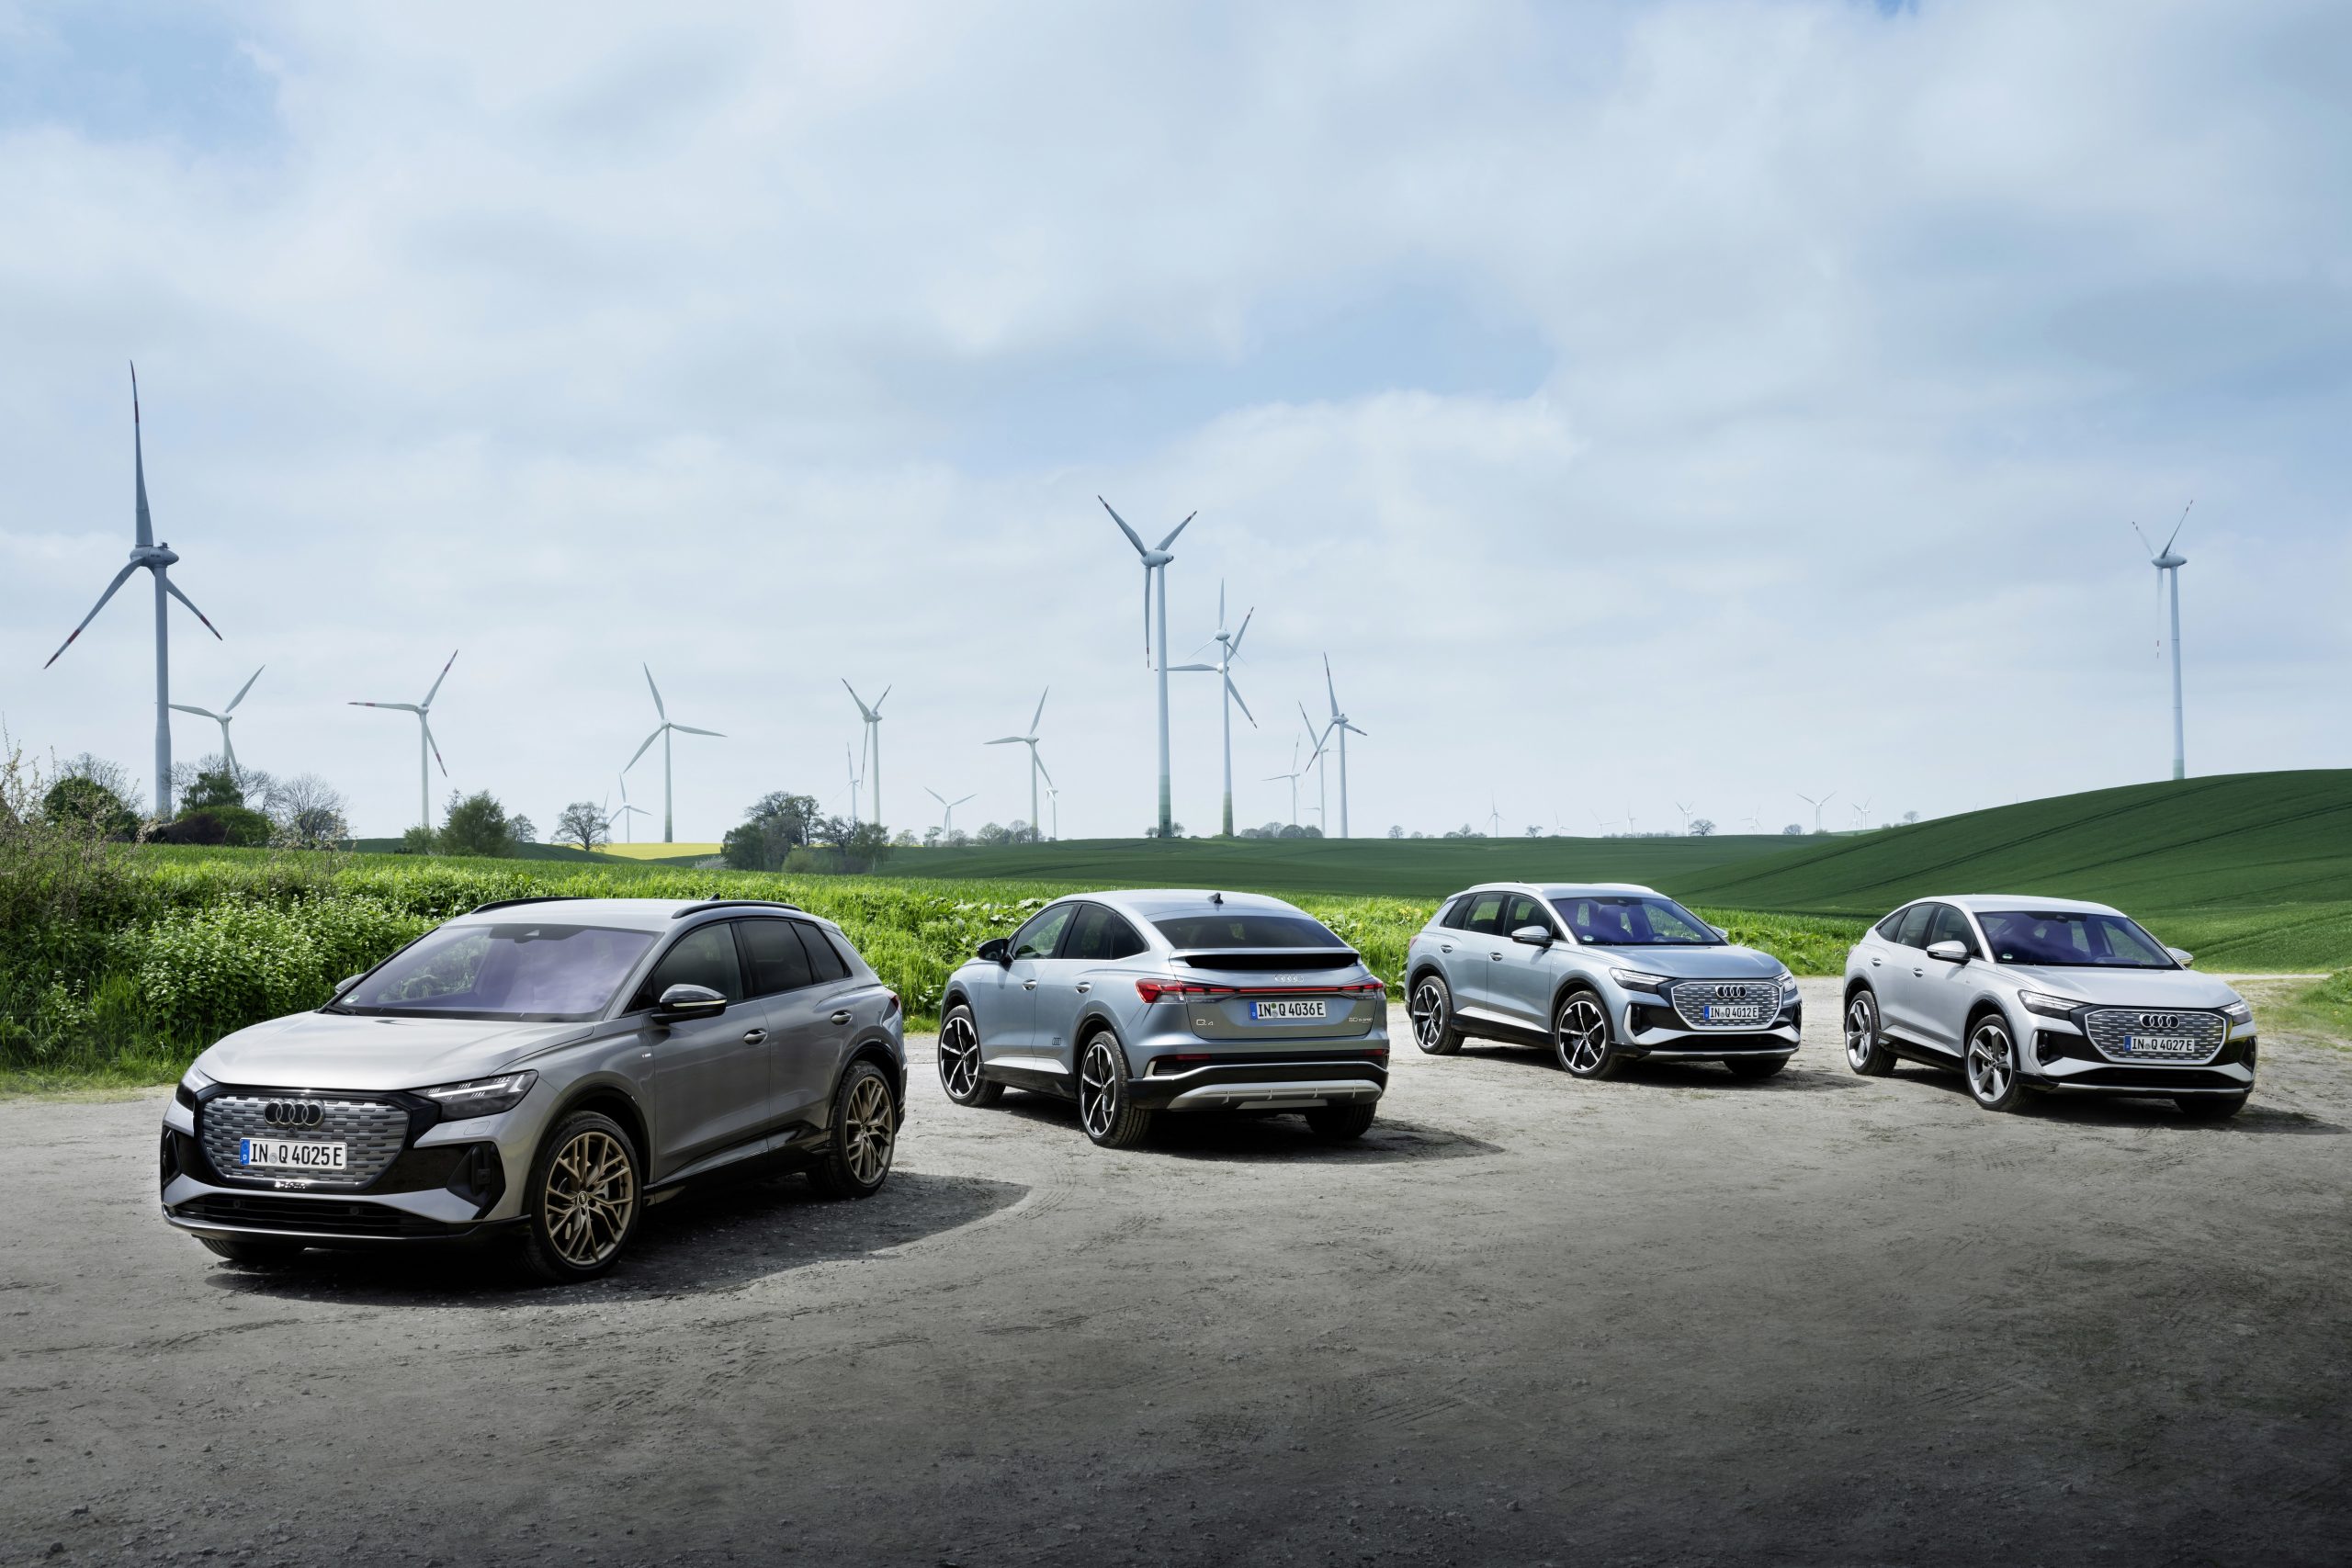 Audi przyspiesza transformację. Wnioski po berlińskiej konferencji klimatycznej